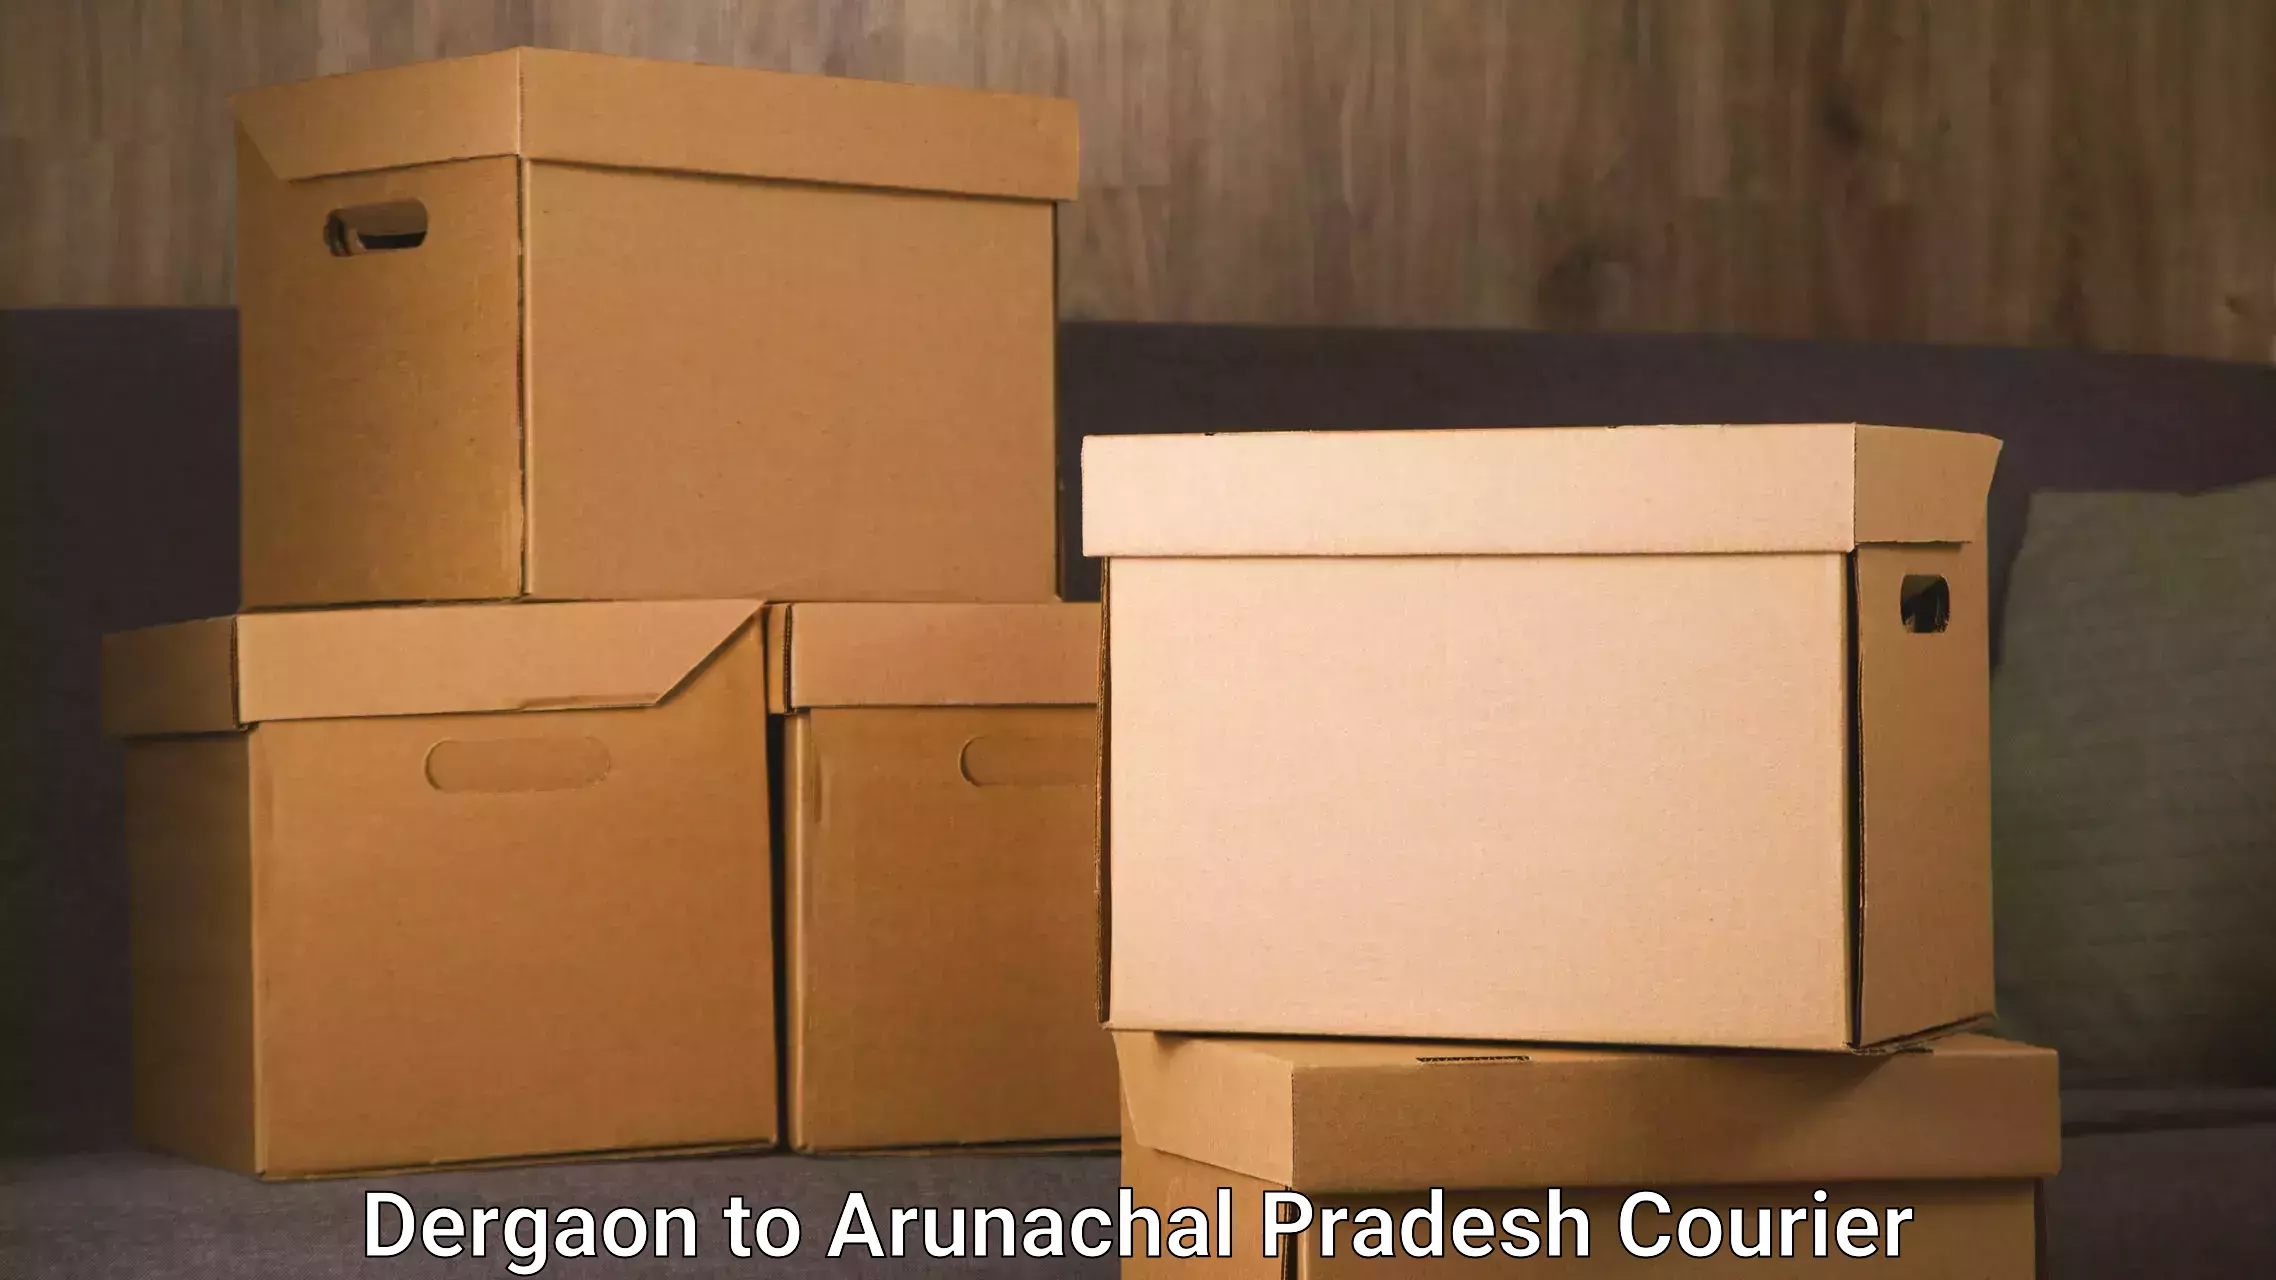 Efficient parcel transport Dergaon to Arunachal Pradesh